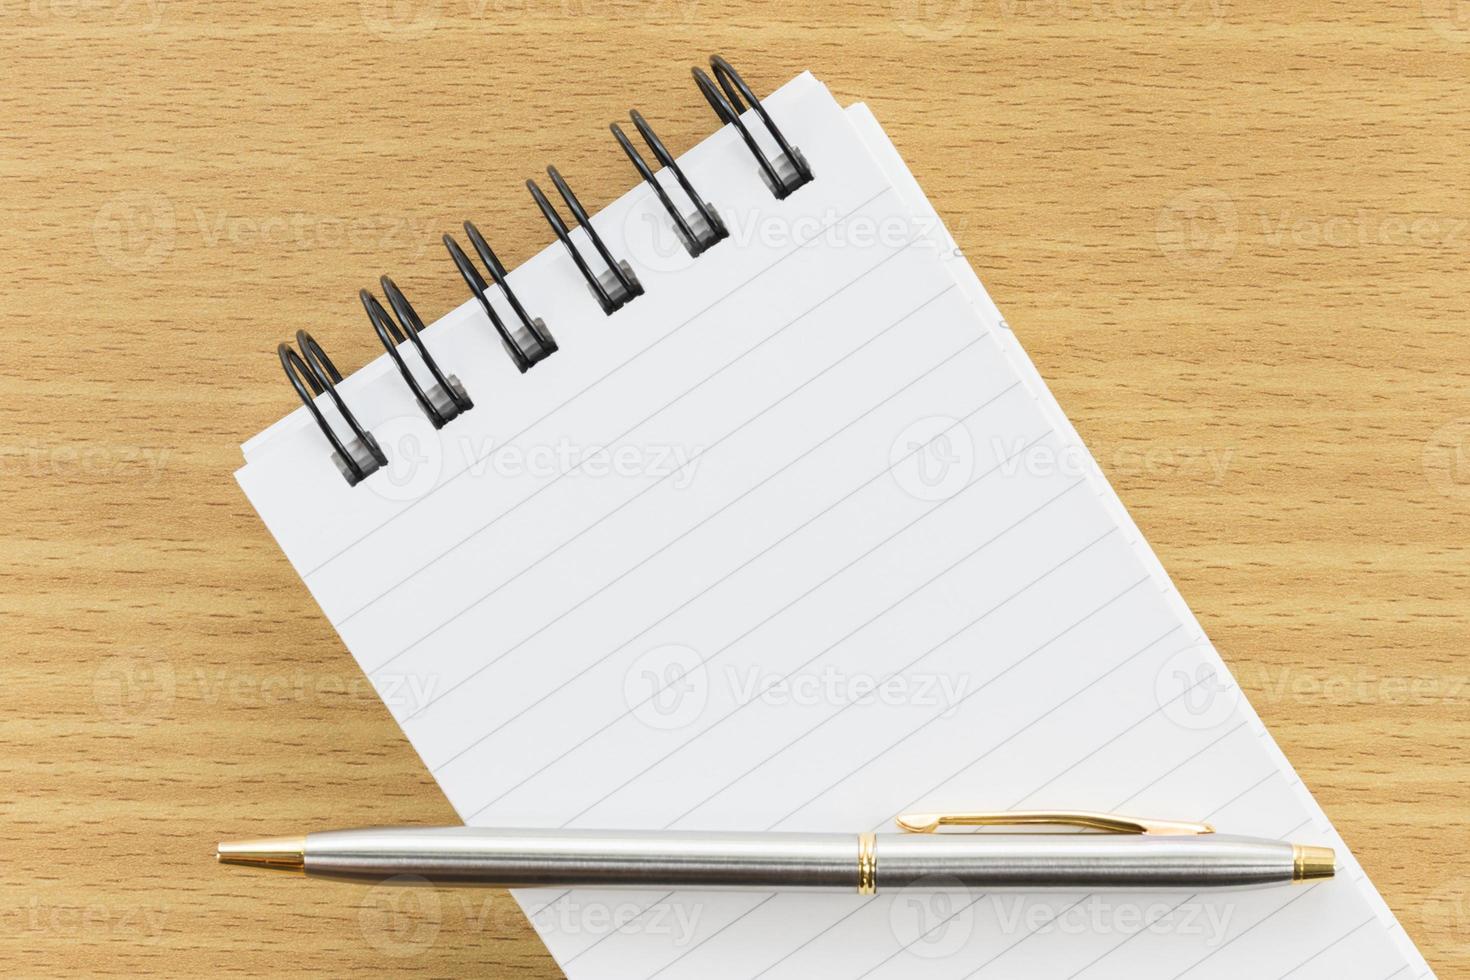 pen en notitieblok met blanco pagina foto